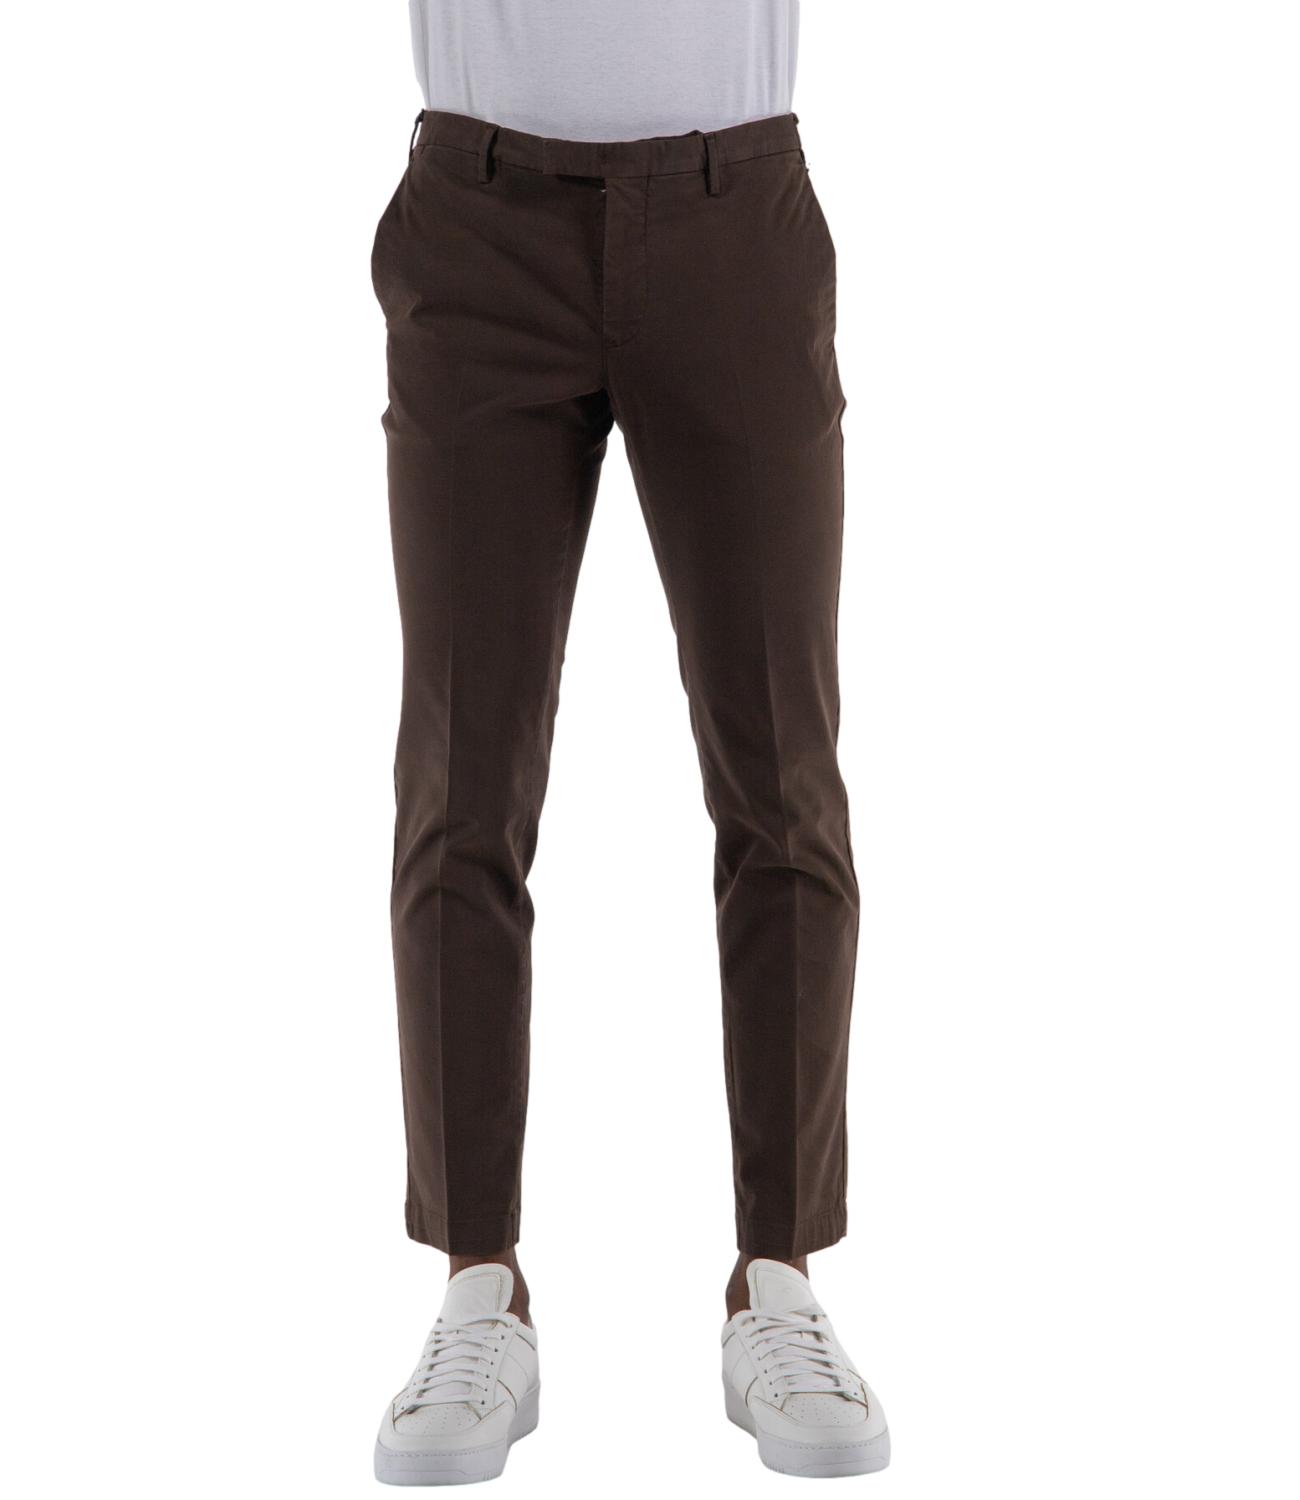 Pantalone PT Torino uomo color marrone scuro L.30